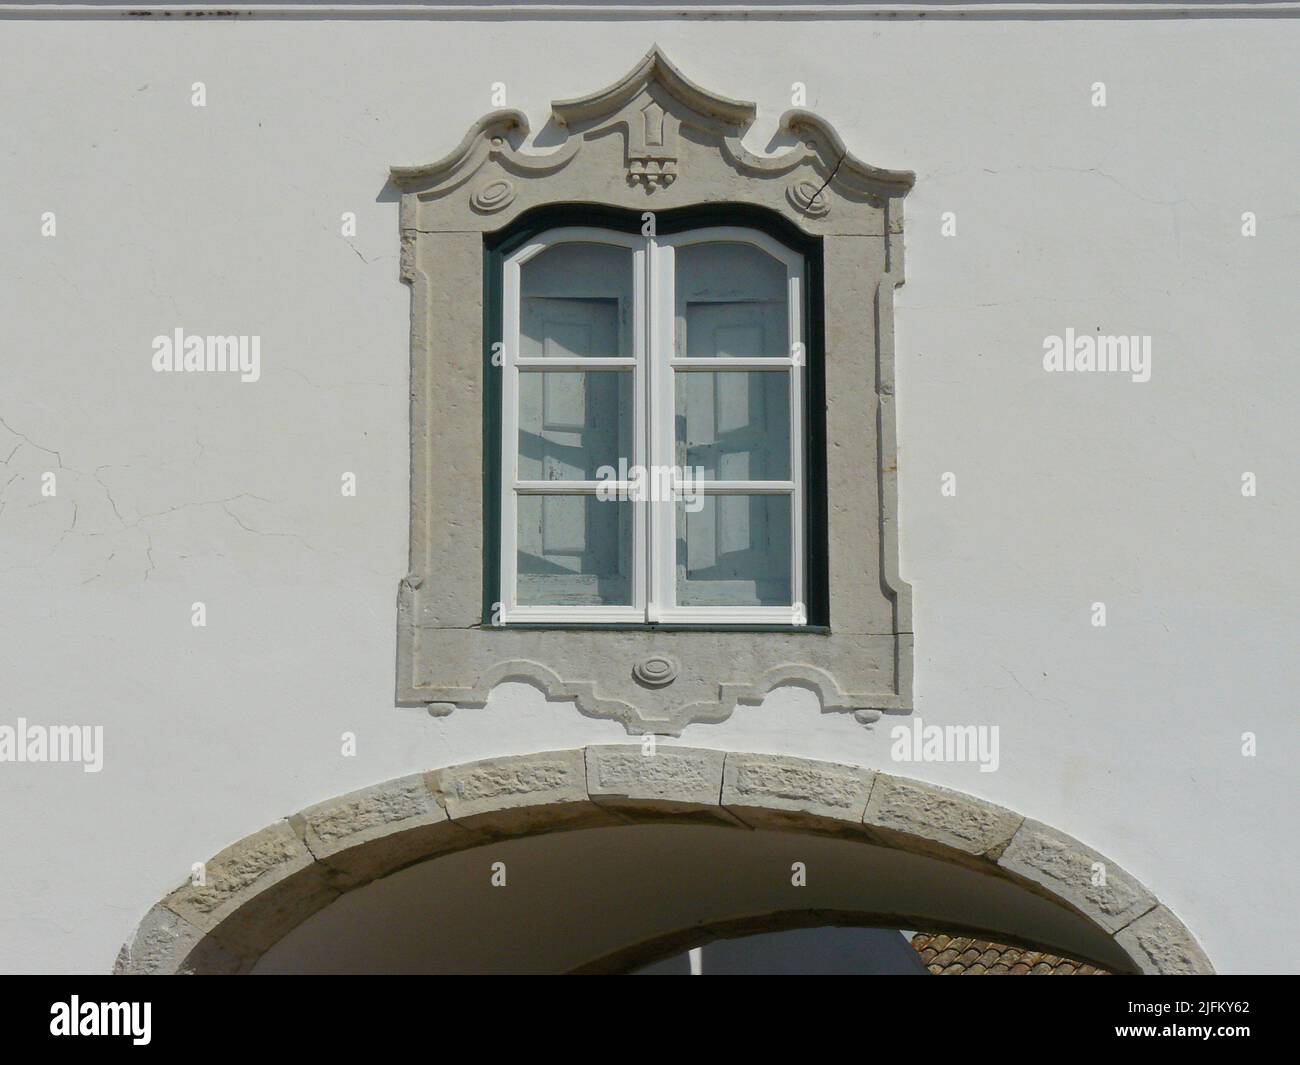 Faro (Algarve) Portugal. Détail architectural de fenêtre sur l'arche dans la ville de Faro. Banque D'Images